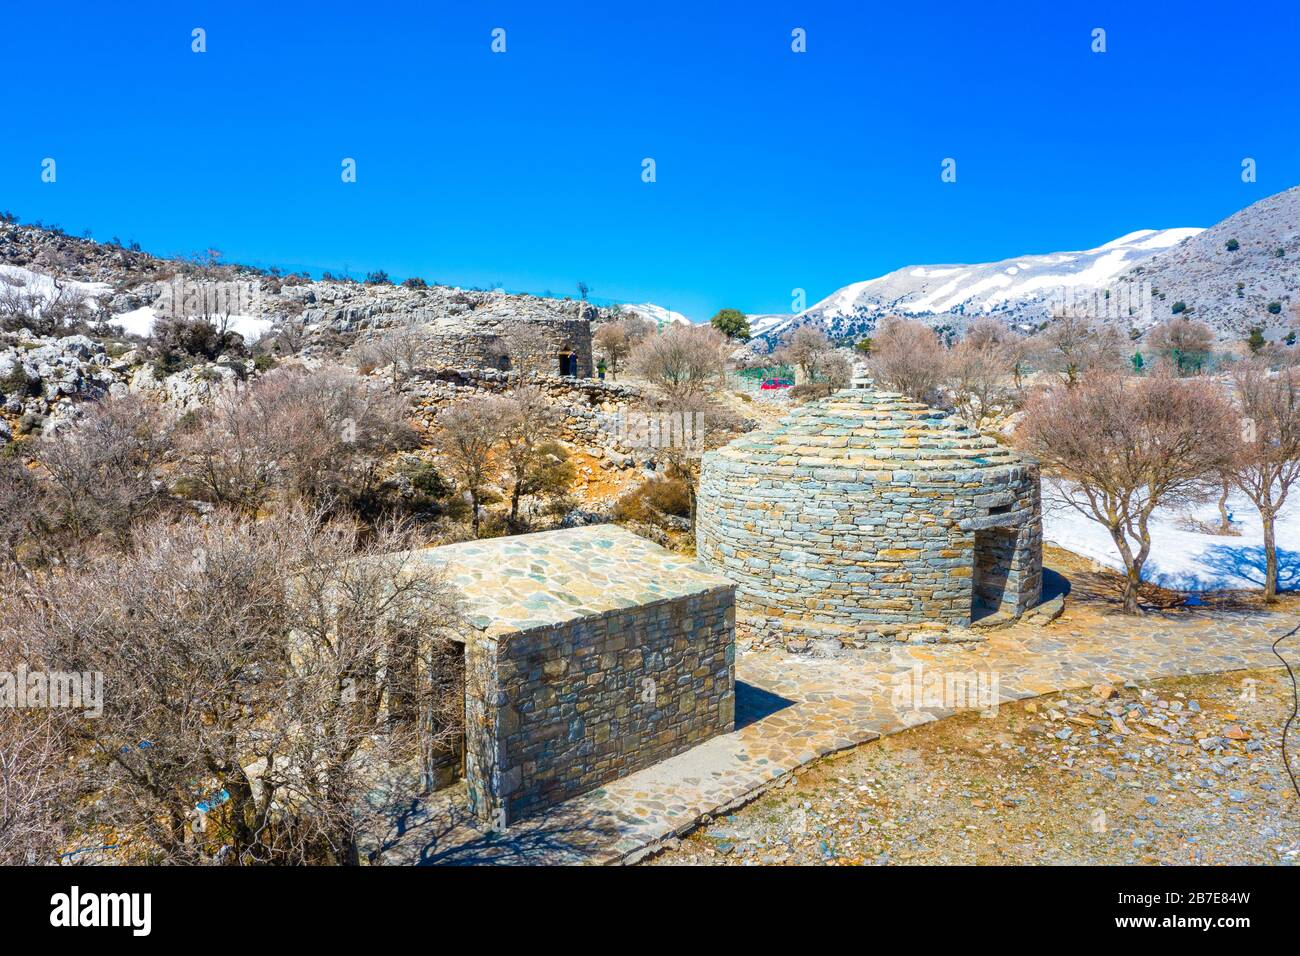 Mitato (capanna costruita da pietre raccolte localmente per fornire rifugio ai pastori) sul monte Psiloritis (Ida) vicino alla foresta di Rouvas, Creta, Grecia. Foto Stock